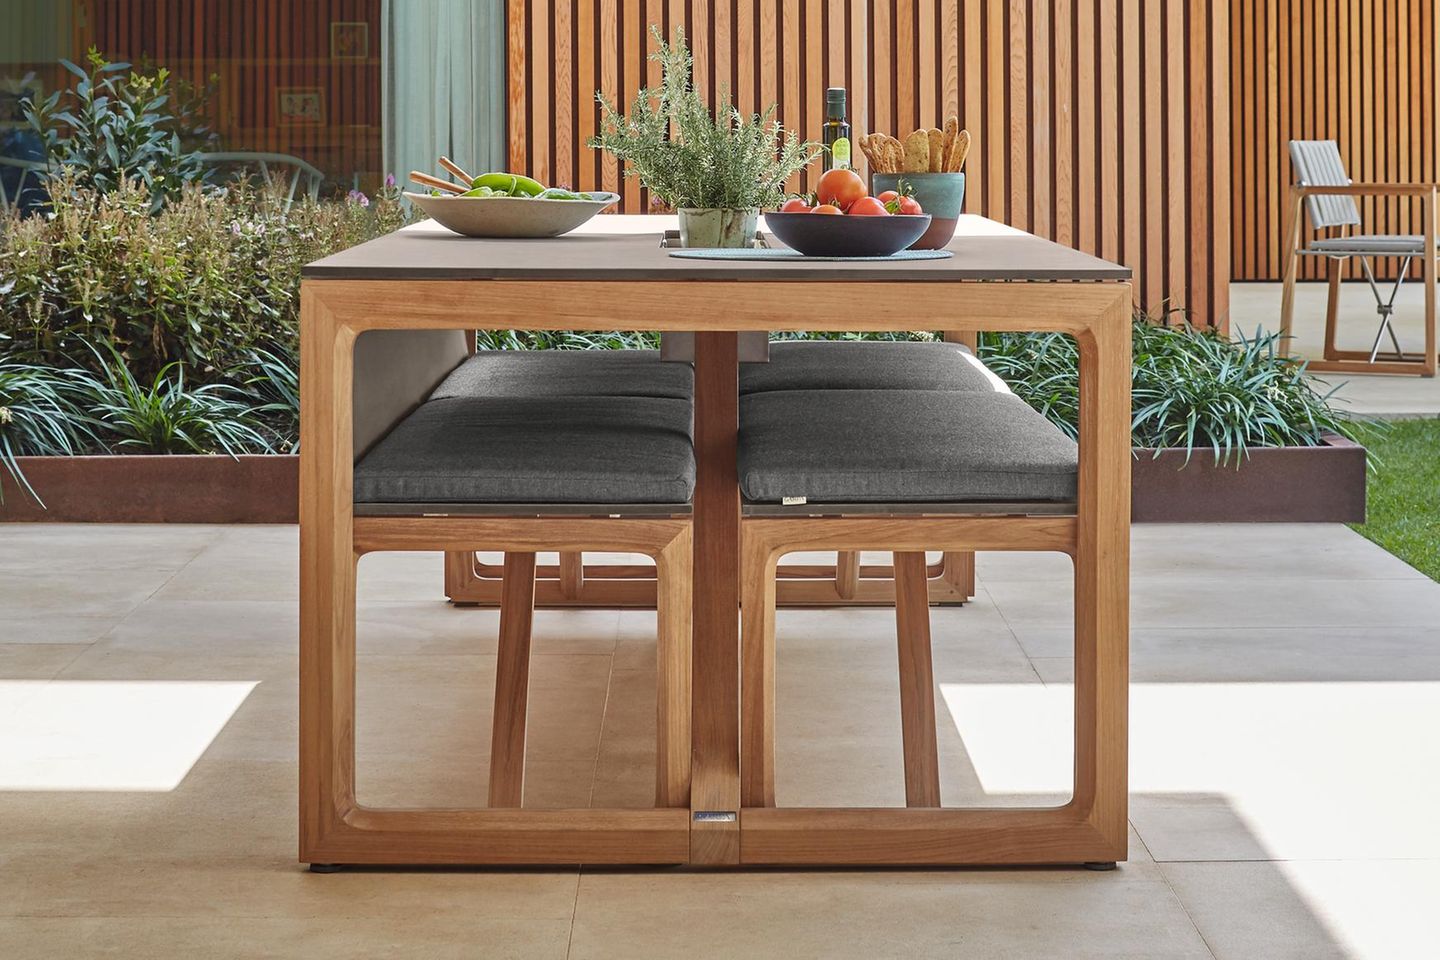 Gartentisch mit passenden Gartenbänken aus Holz mit Polsterung auf einer Terrasse